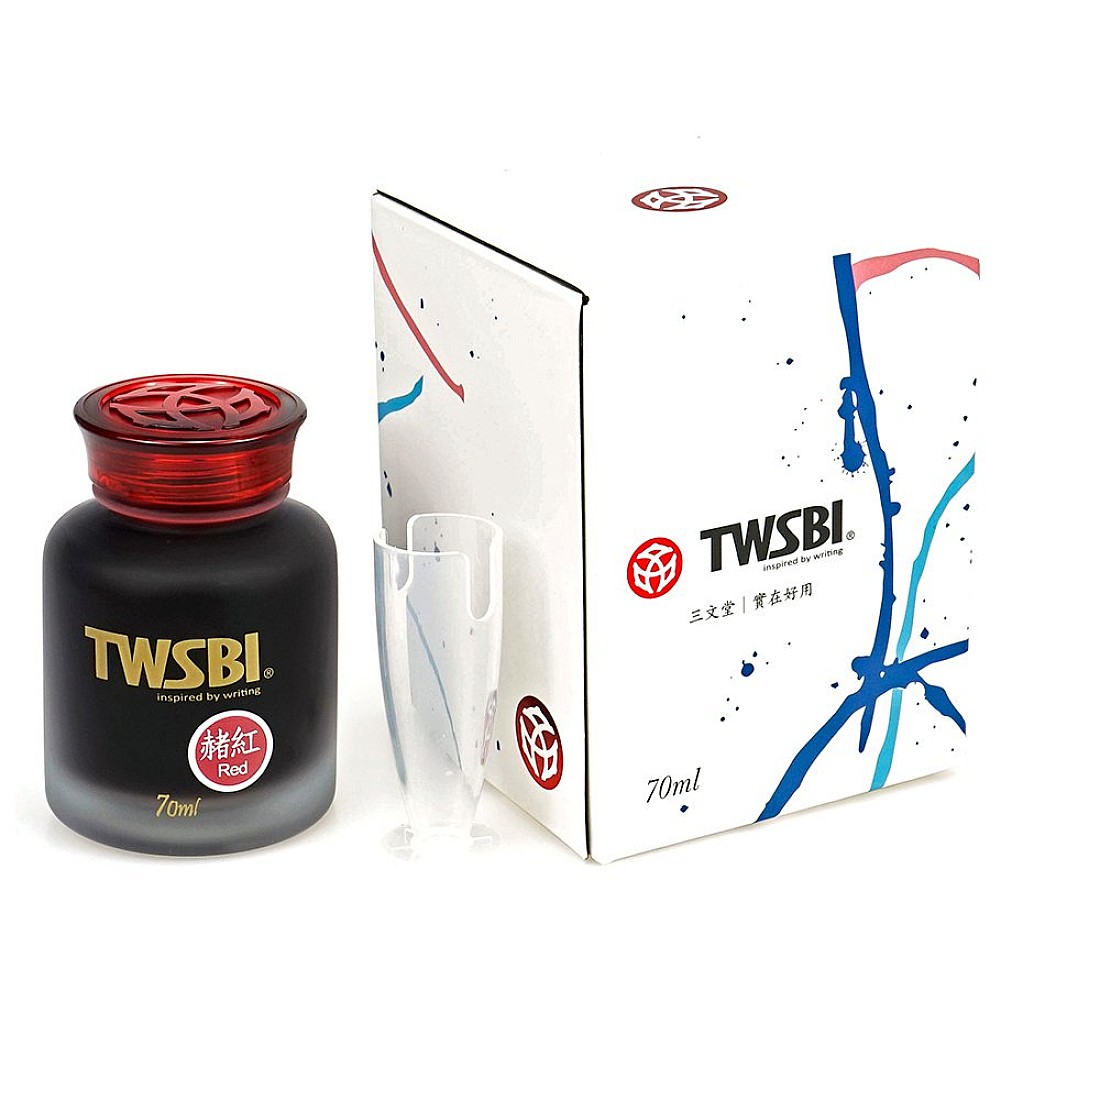 TWSBI 70ml Ink Bottle - Red